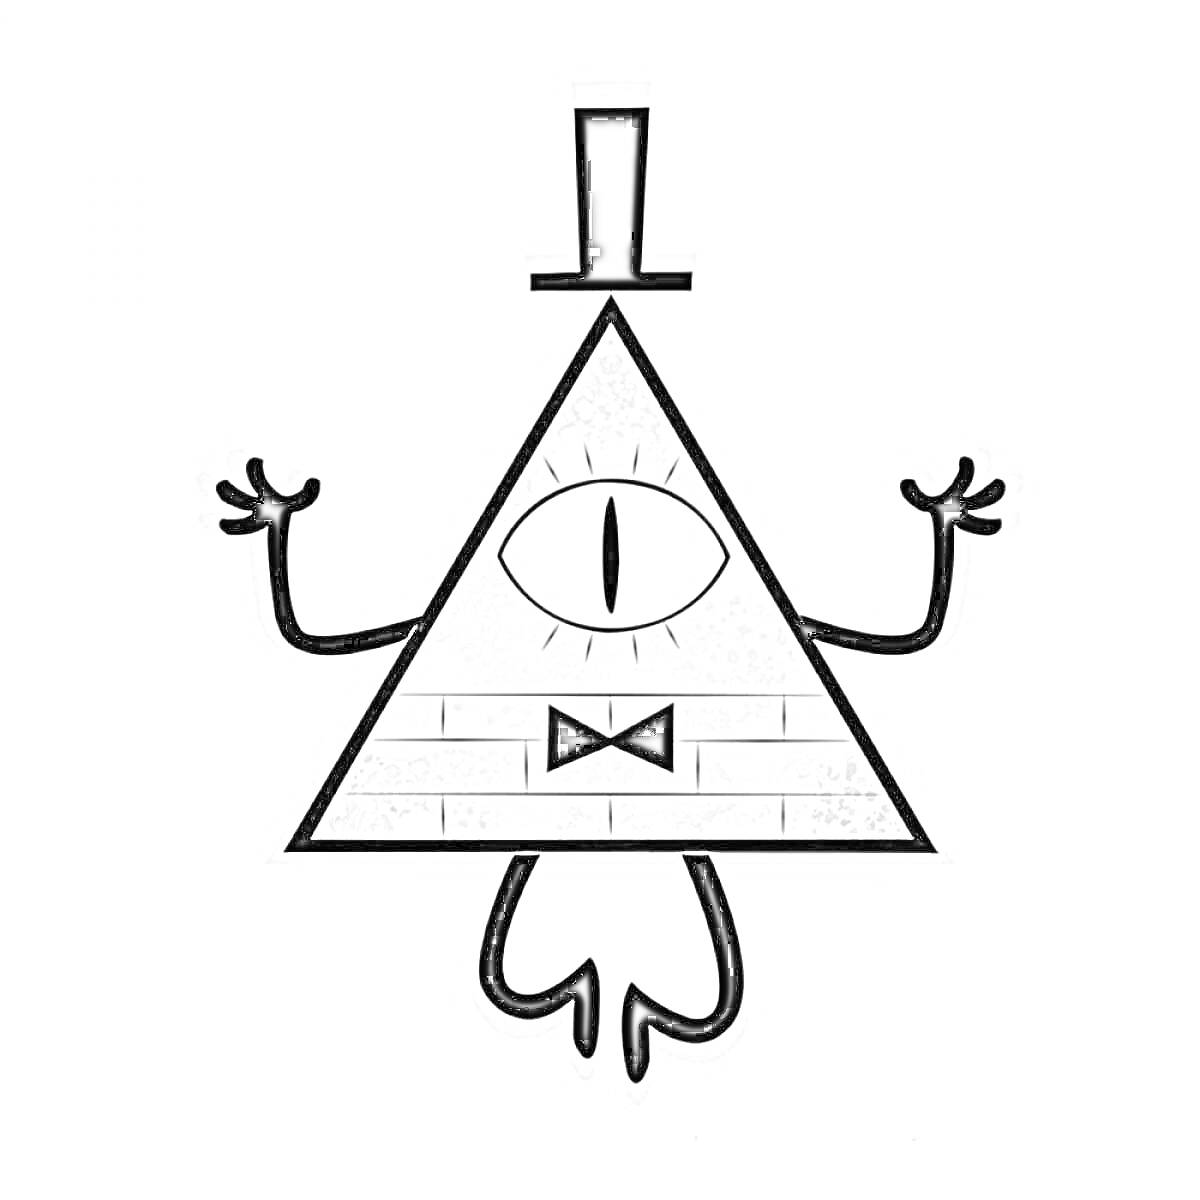 Раскраска Билл Шифр с всевидящим глазом, шляпой, руками и ногами, одноглазая треугольная фигура с кирпичным узором и бабочкой